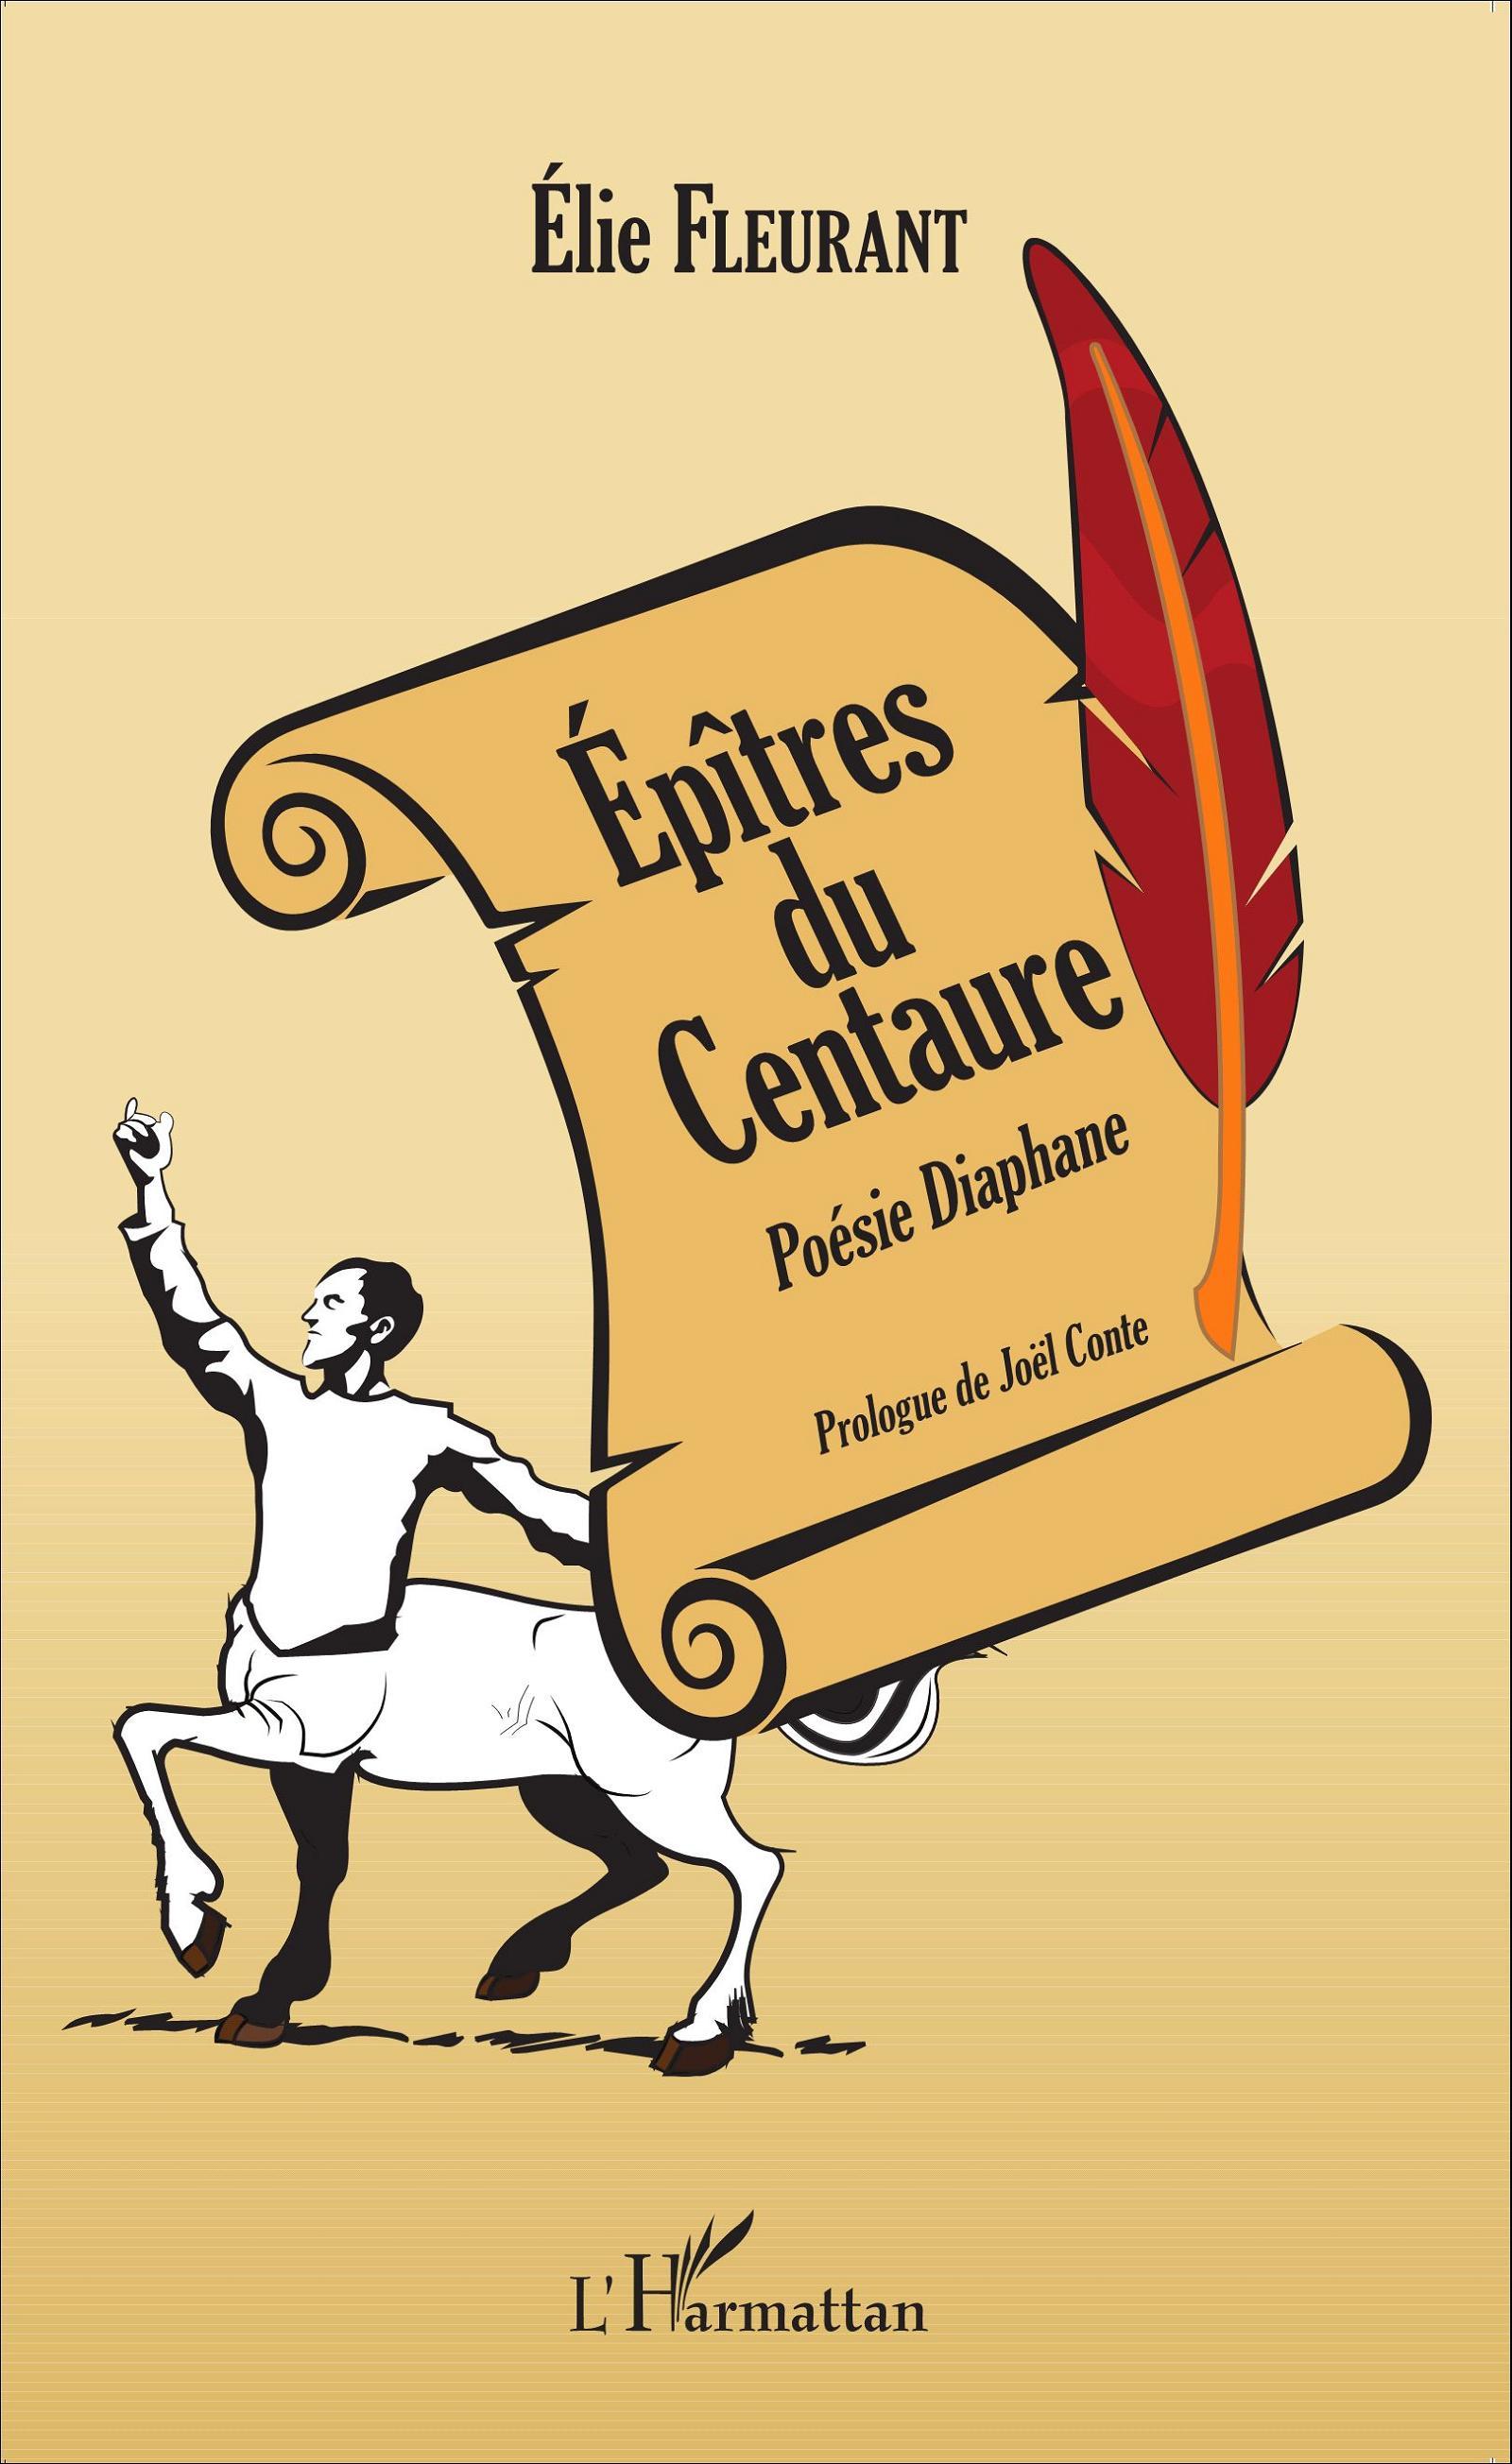 Épîtres du Centaure, Poésie Diaphane (9782343064024-front-cover)